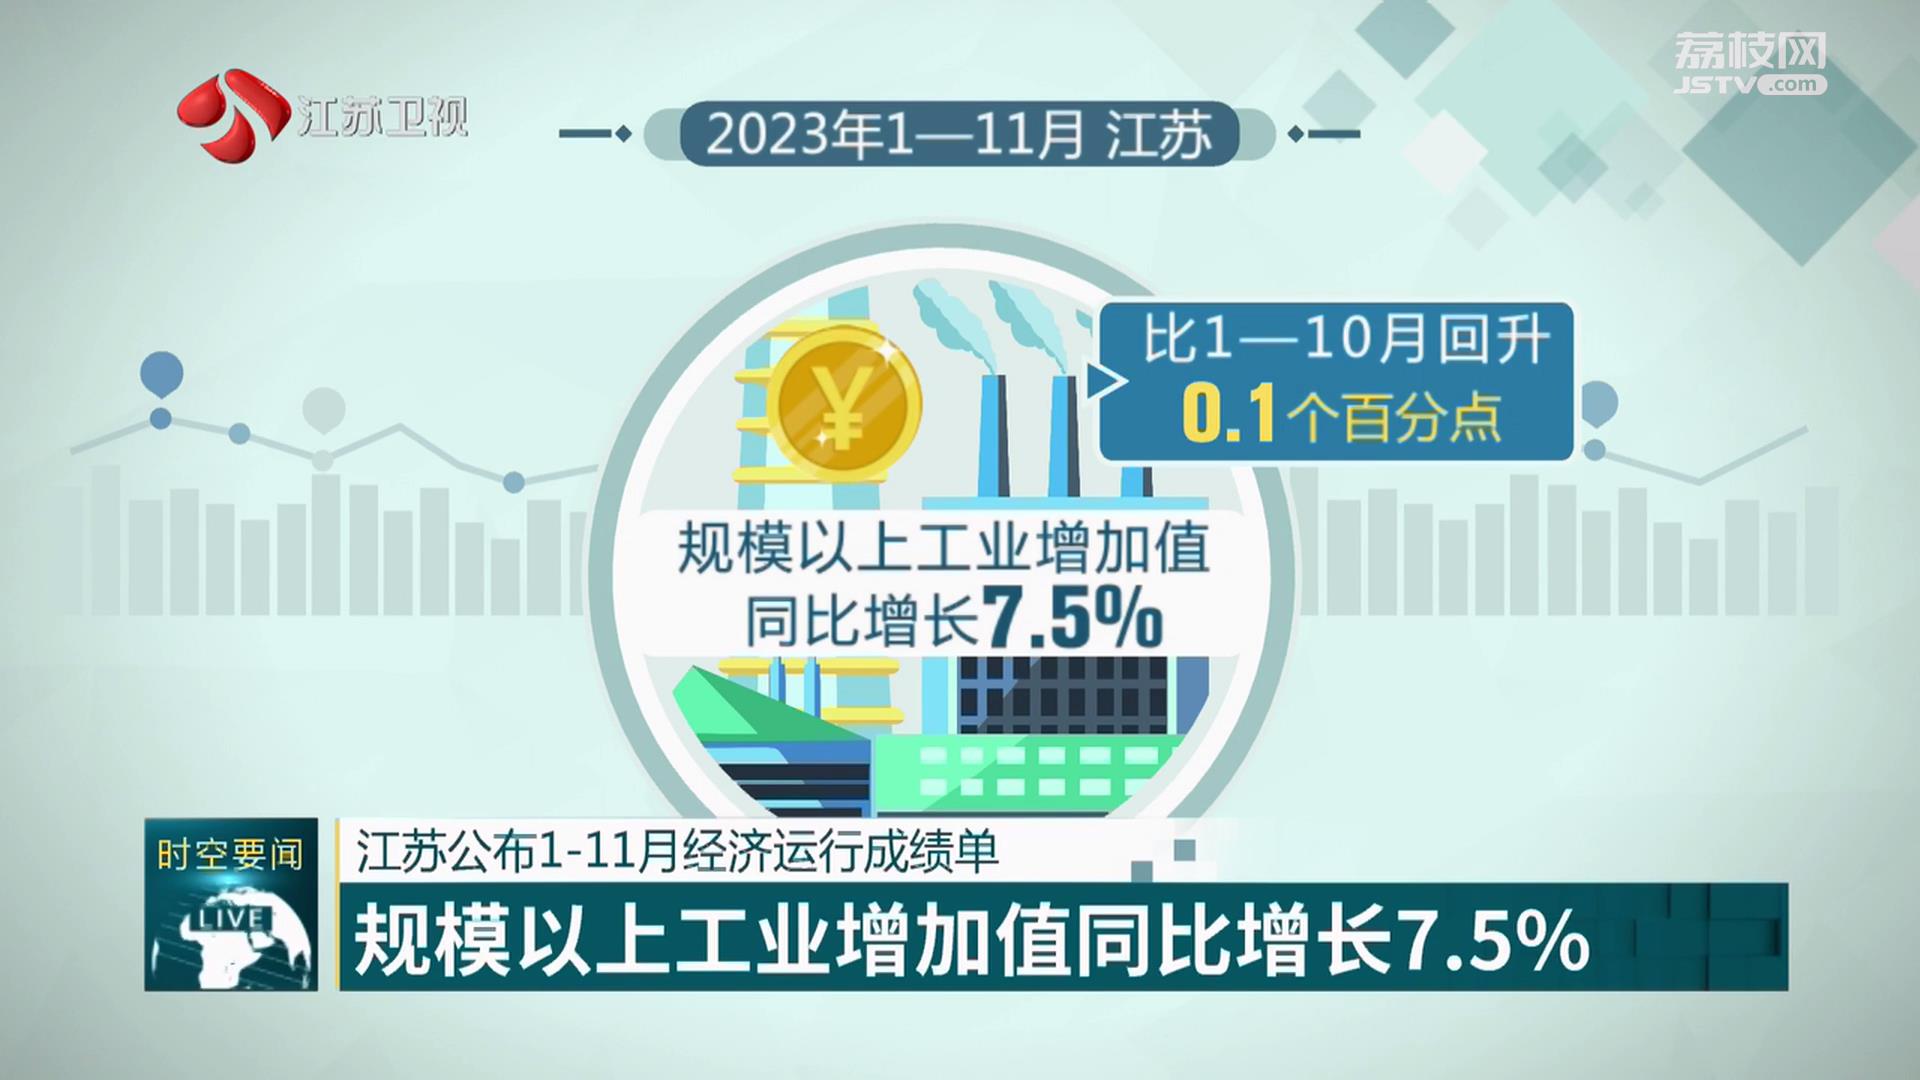 江苏公布1-11月经济运行成绩单 规模以上工业增加值同比增长7.5%